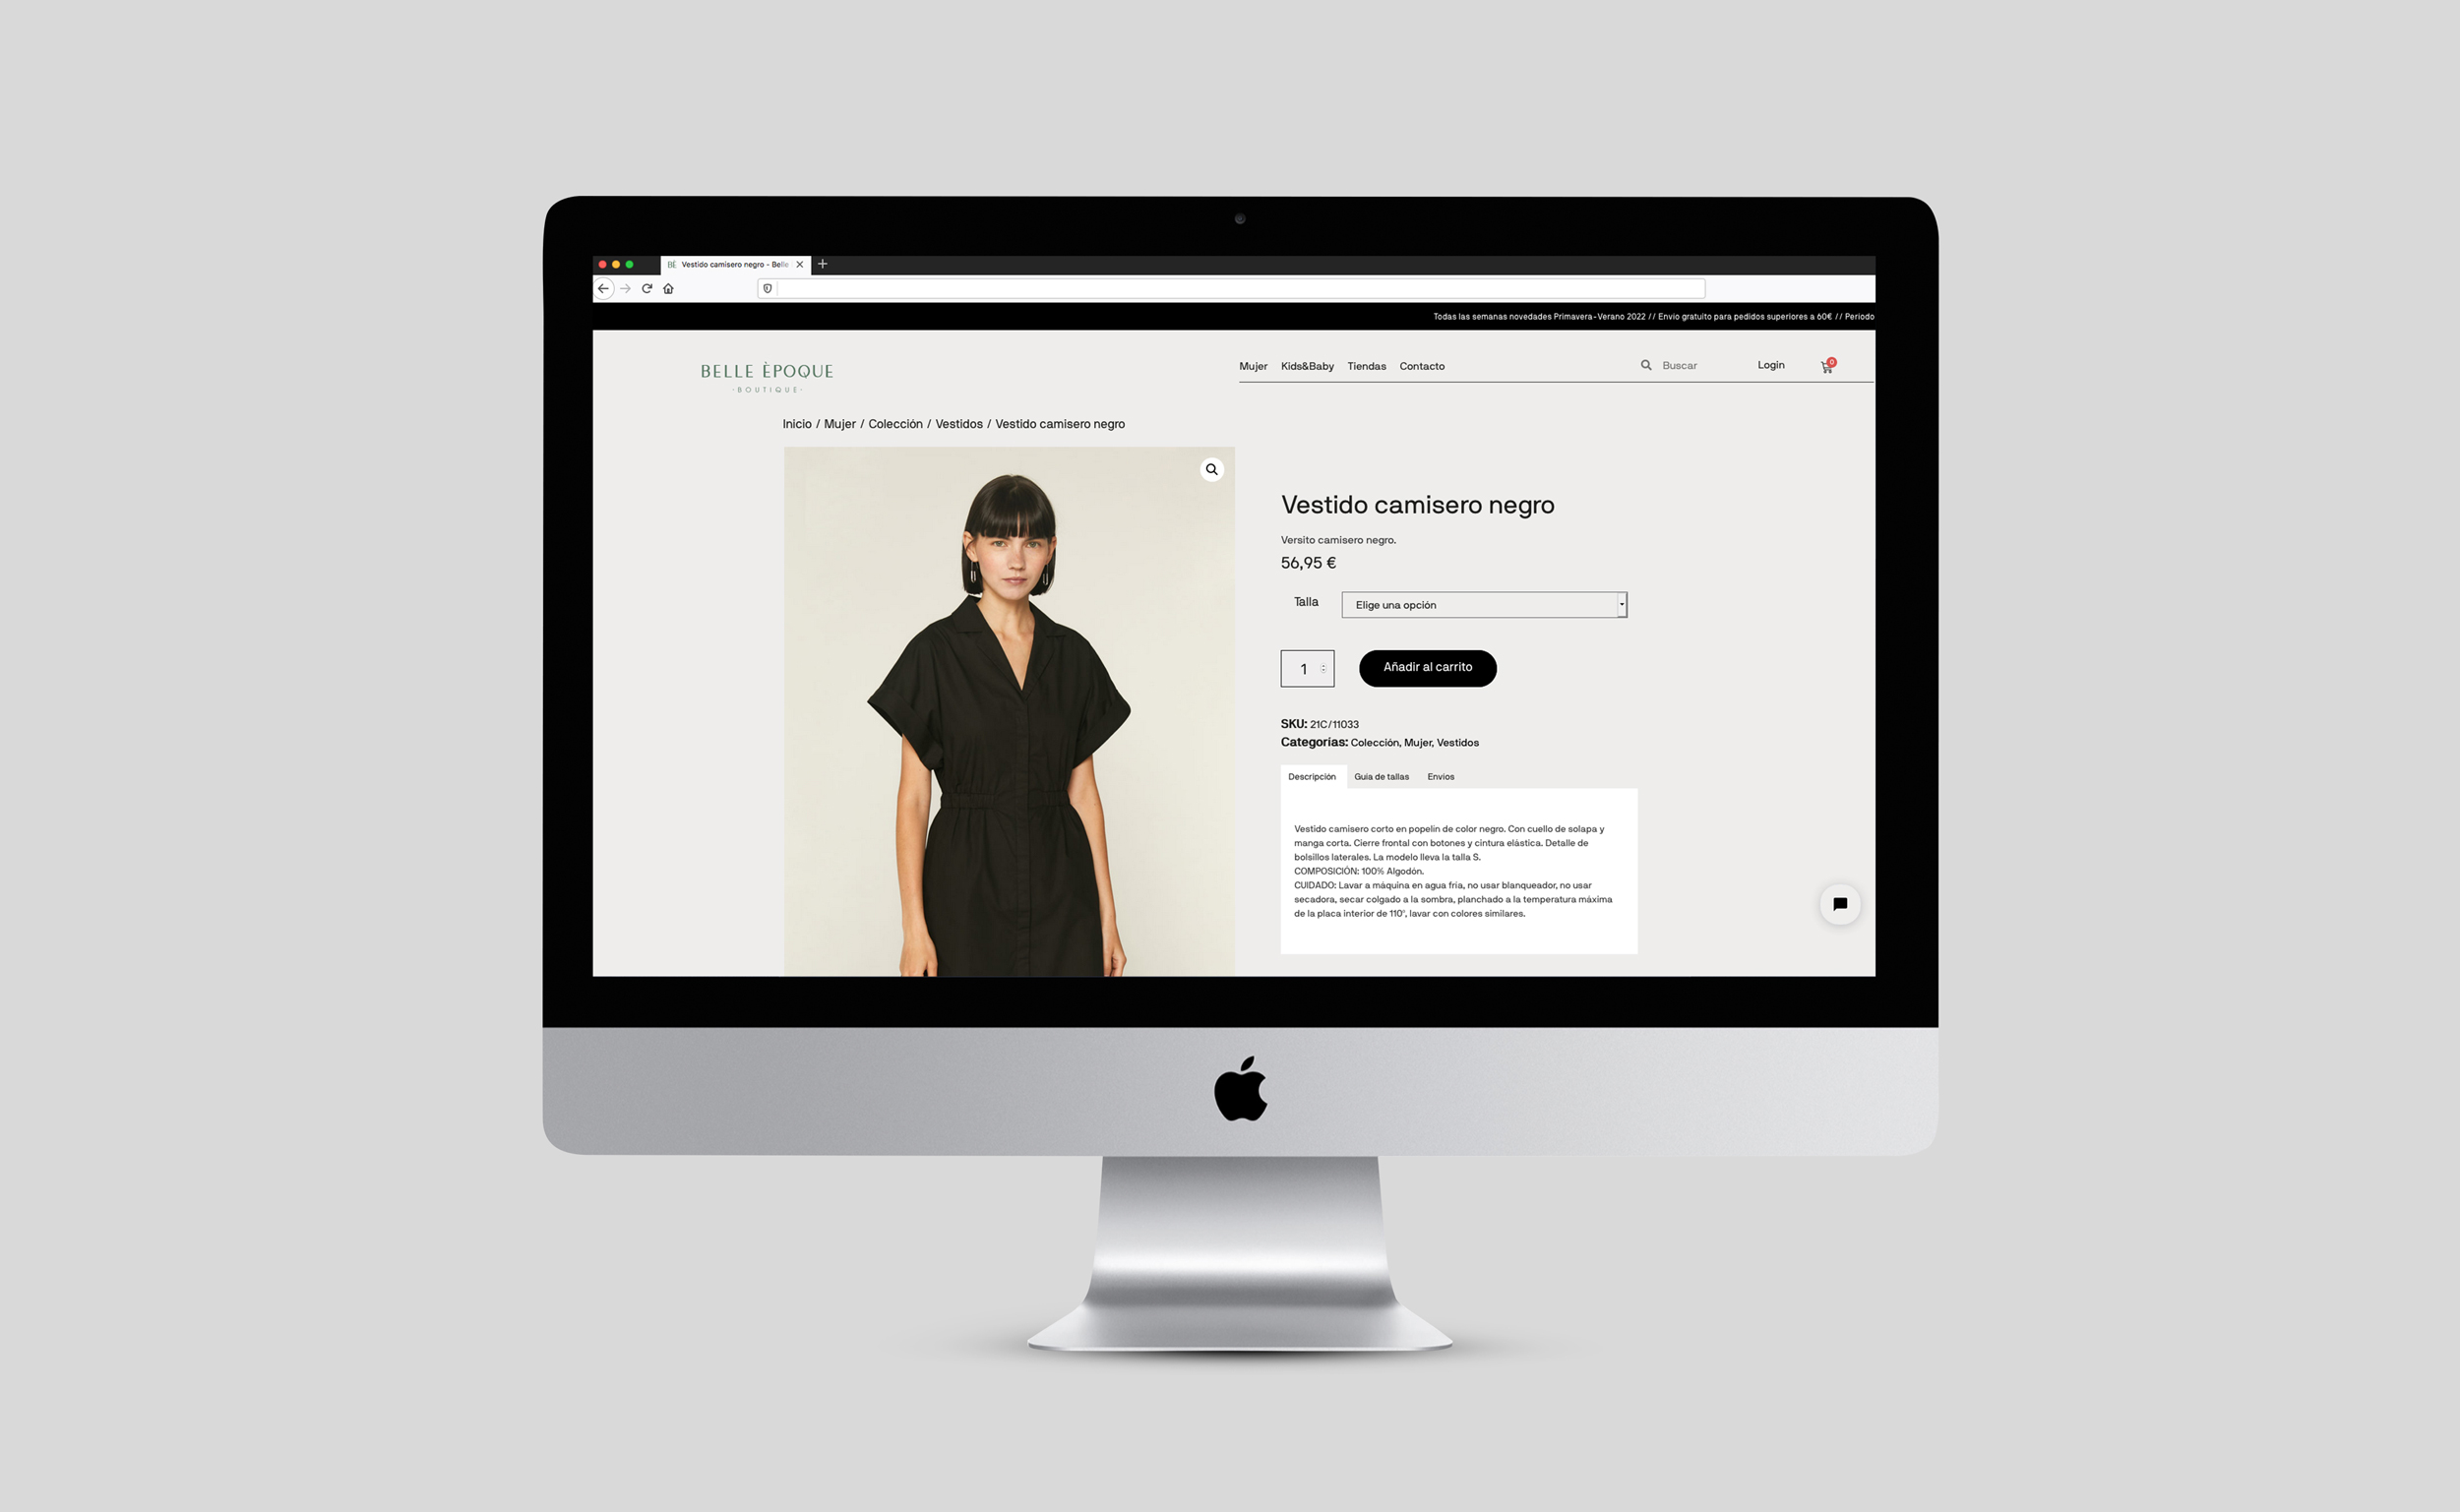 Diseño y desarrollo de tienda online para Belle Èpoque. Vista detalle web sobremesa iMac.